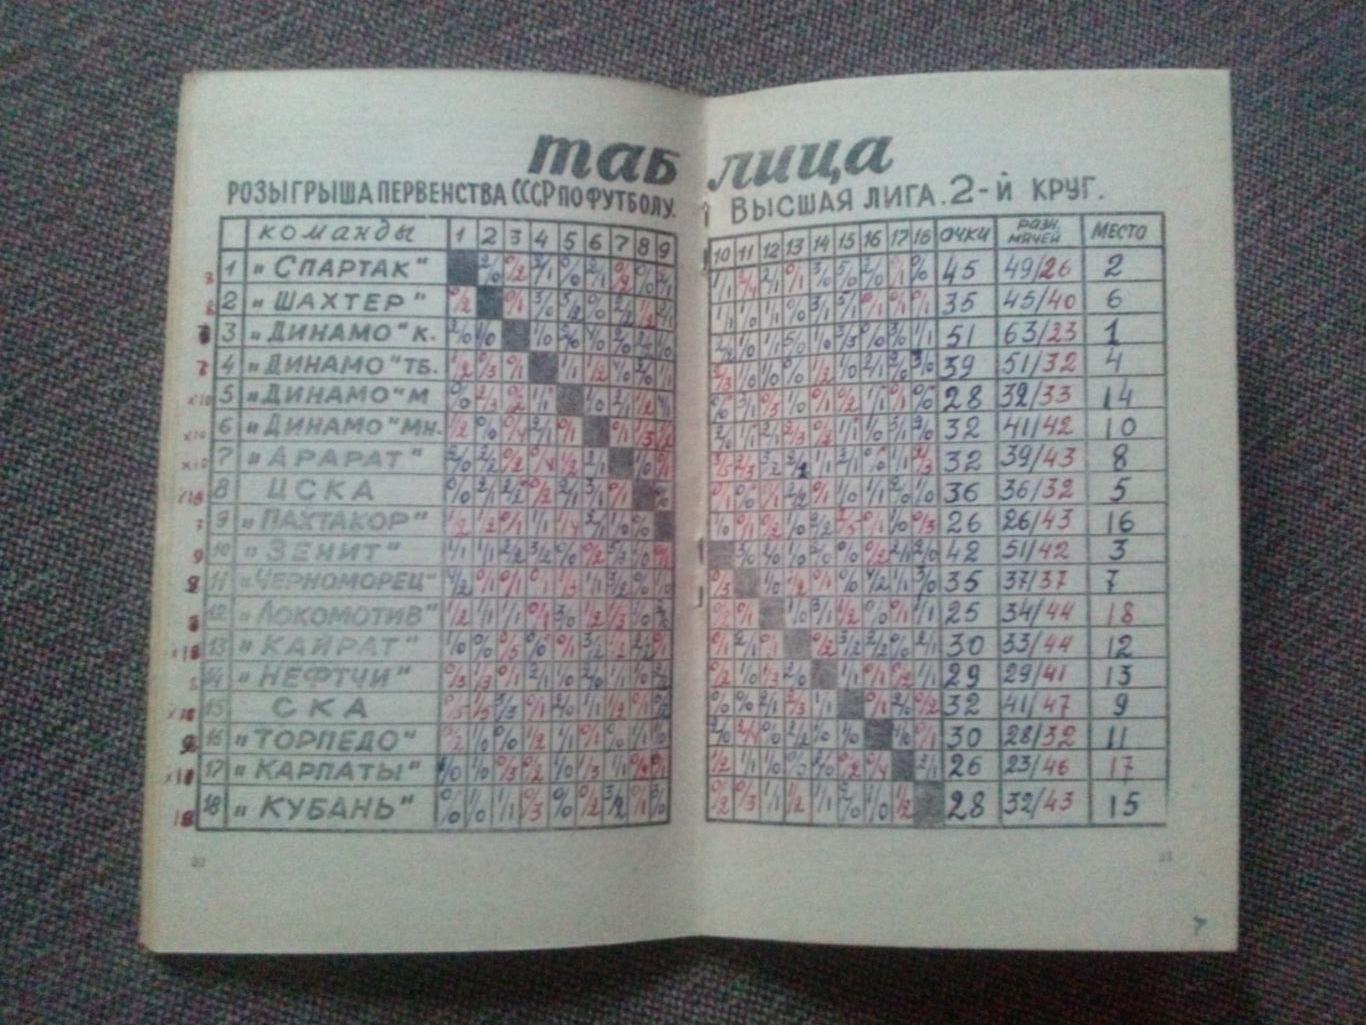 Футбол Календарь - справочник Ростов на Дону 1980 г. ( 2 - й круг ) Спорт 5